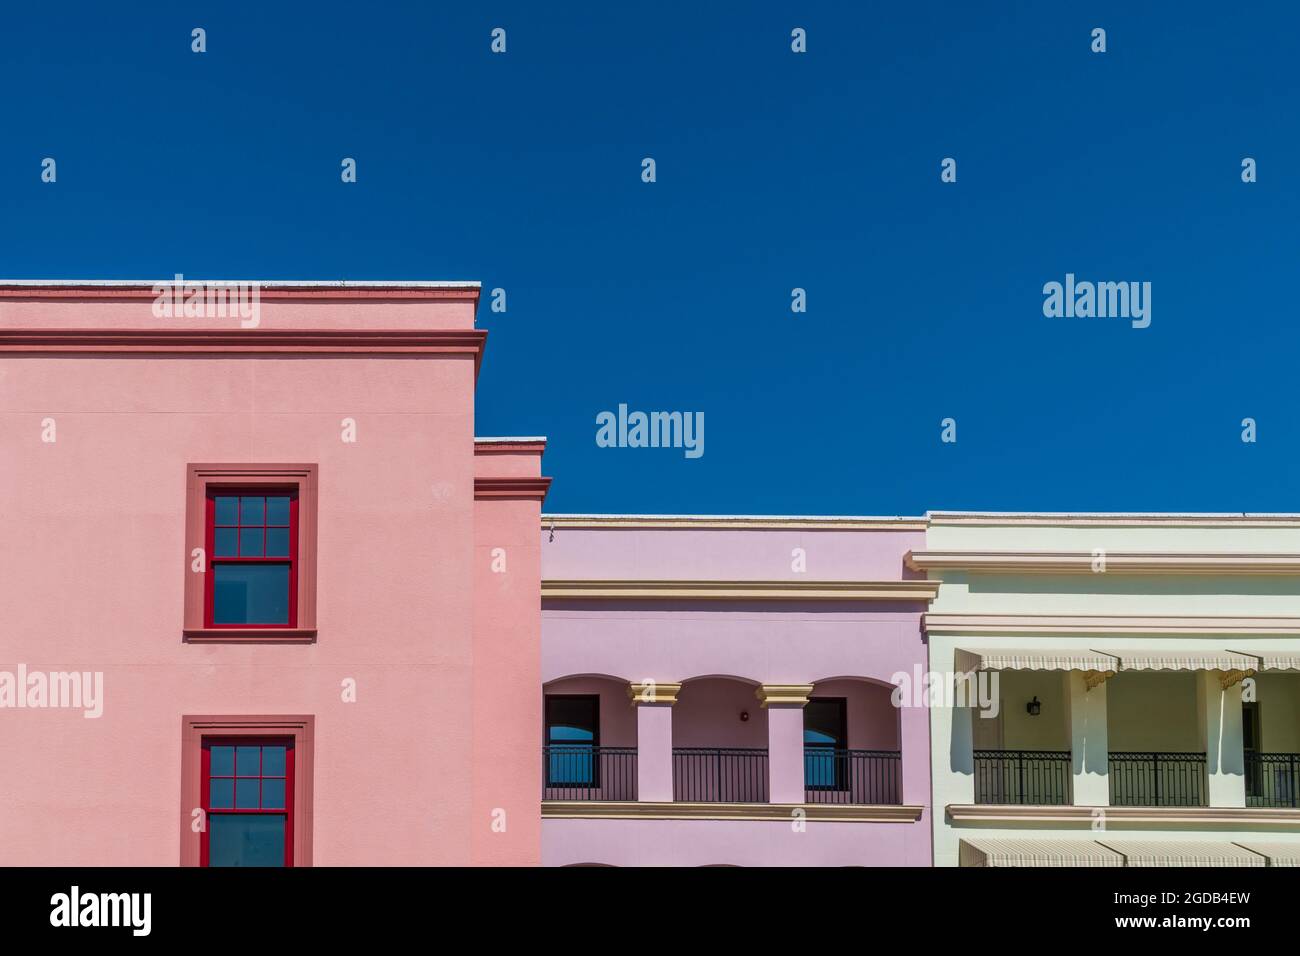 Façades de bâtiments colorées au ciel bleu clair et profond Banque D'Images